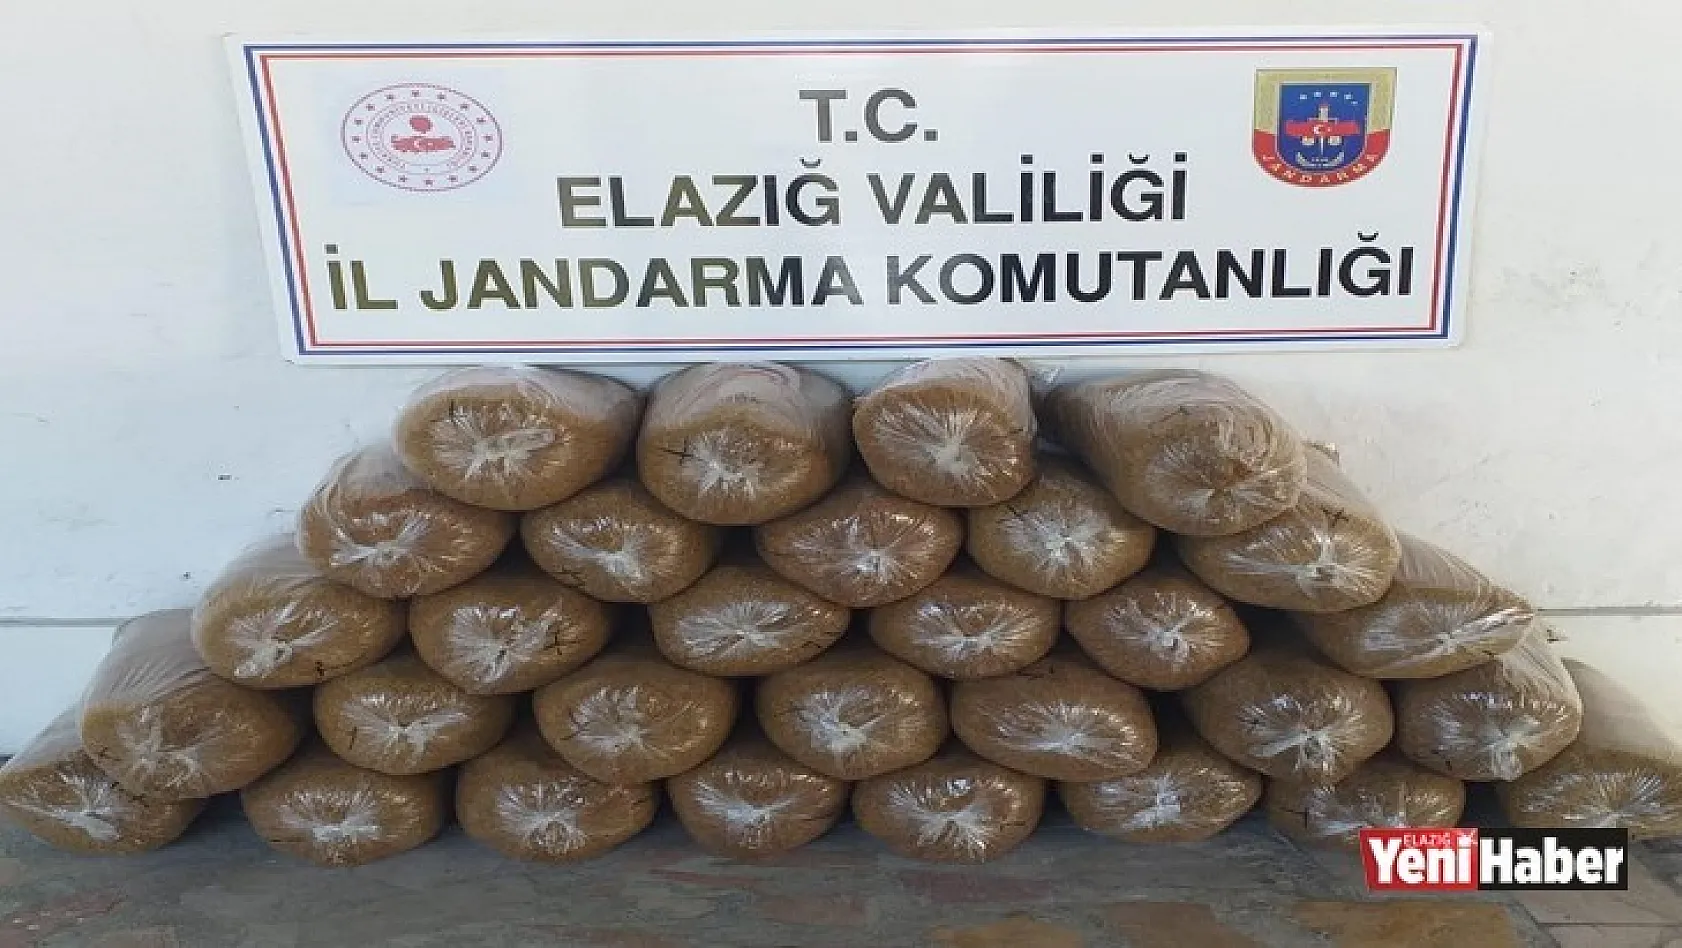 Elazığ'da 150 Kilogram Kaçak Tütün Elegeçirildi!